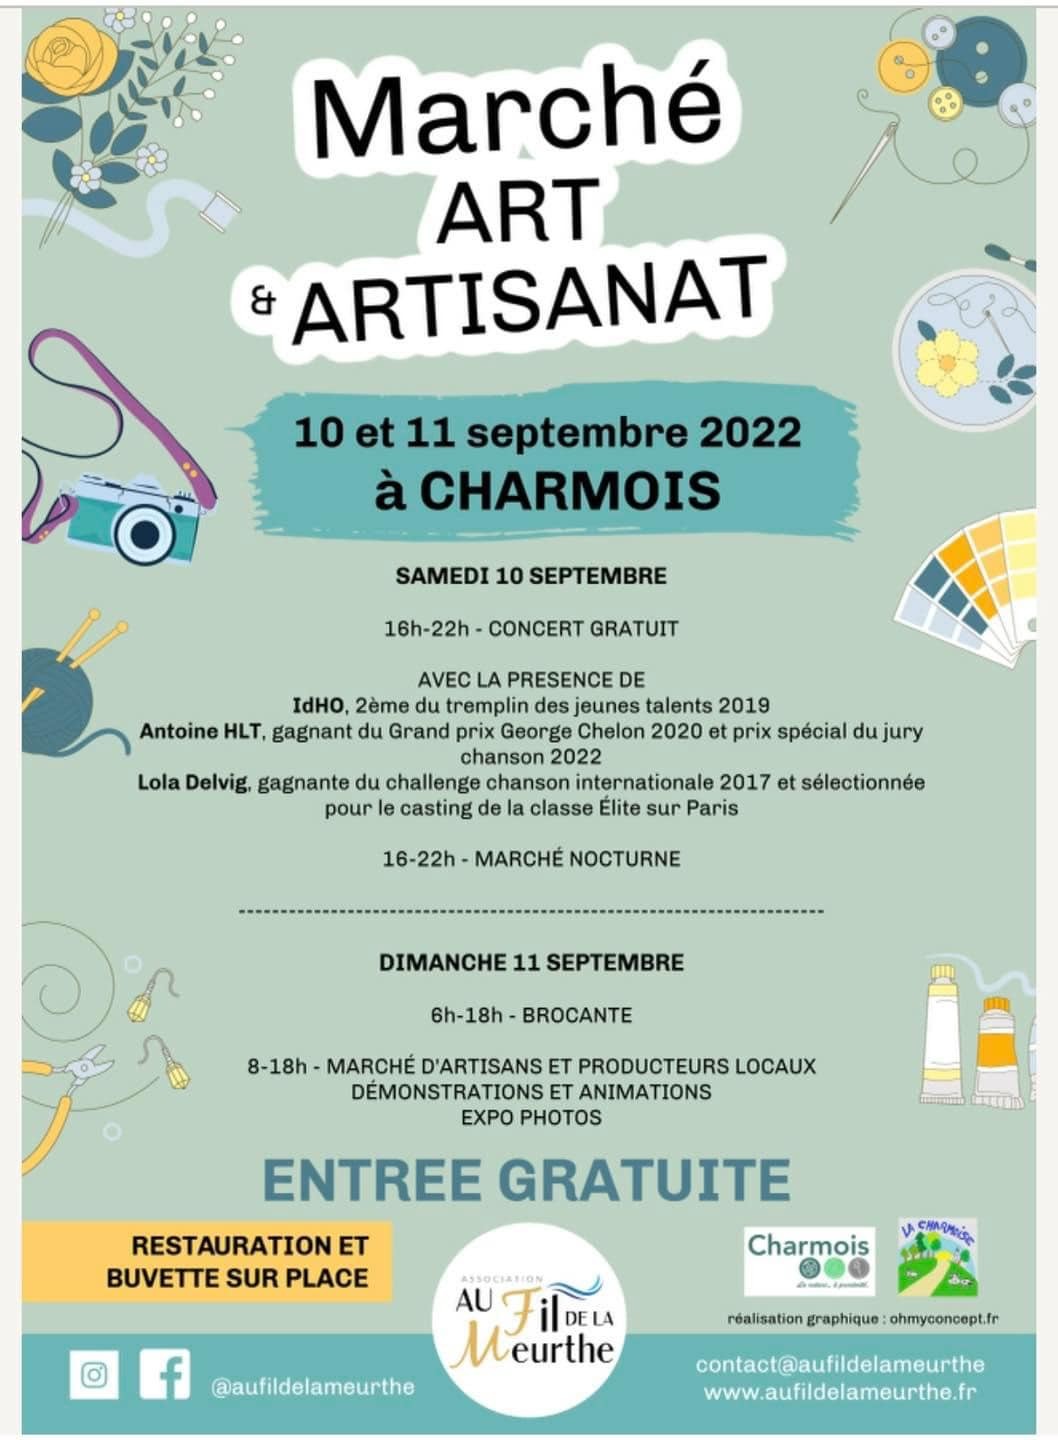 Marché Art et Artisanat - Au fil de la meurthe - Charmois - 10 septembre 2022